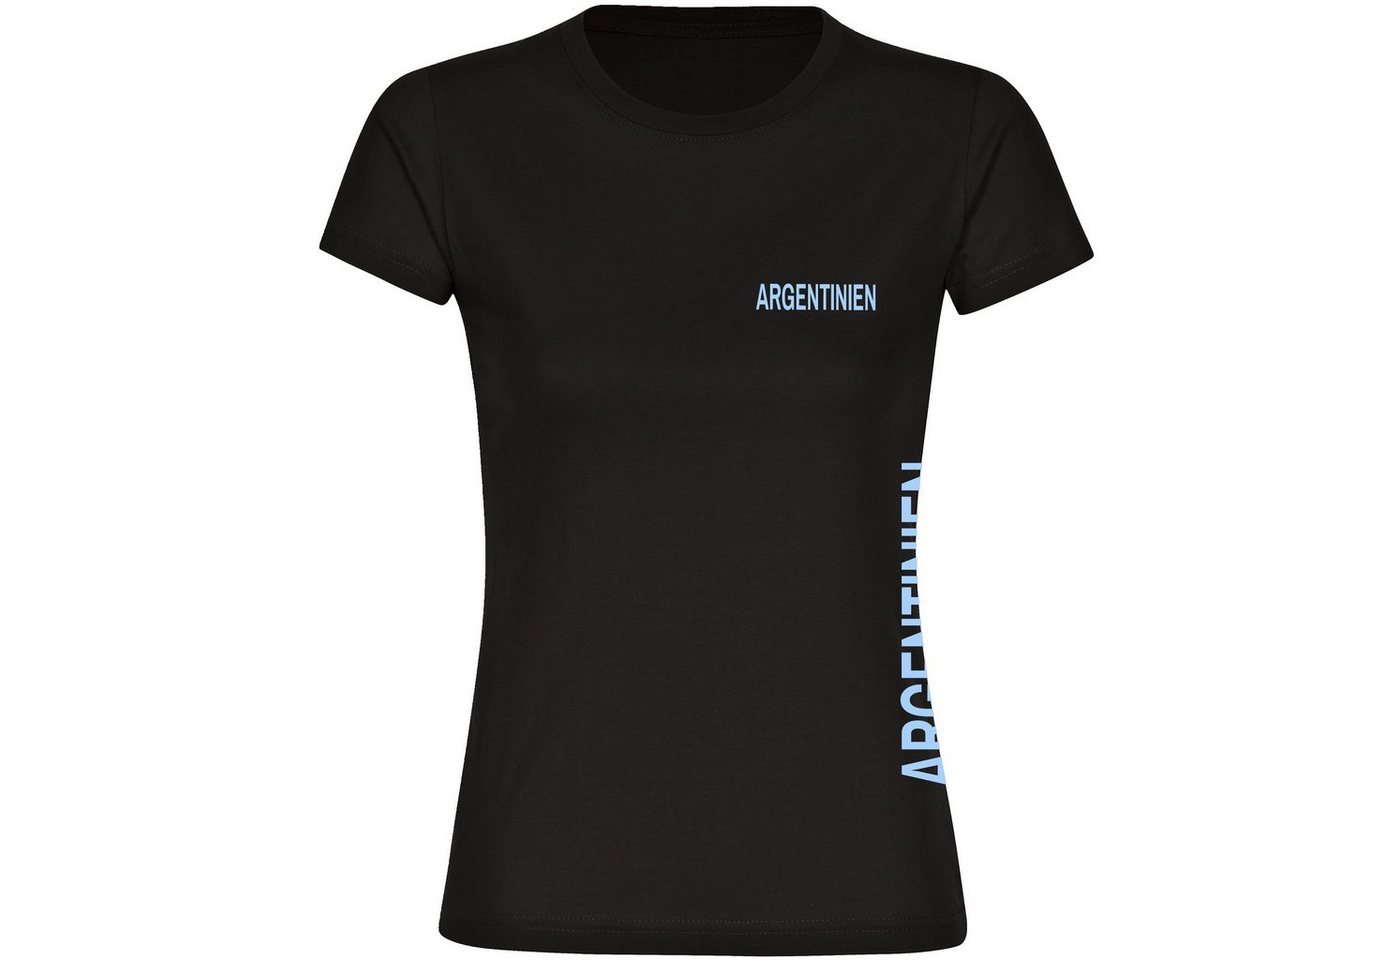 multifanshop T-Shirt Damen Argentinien - Brust & Seite - Frauen von multifanshop